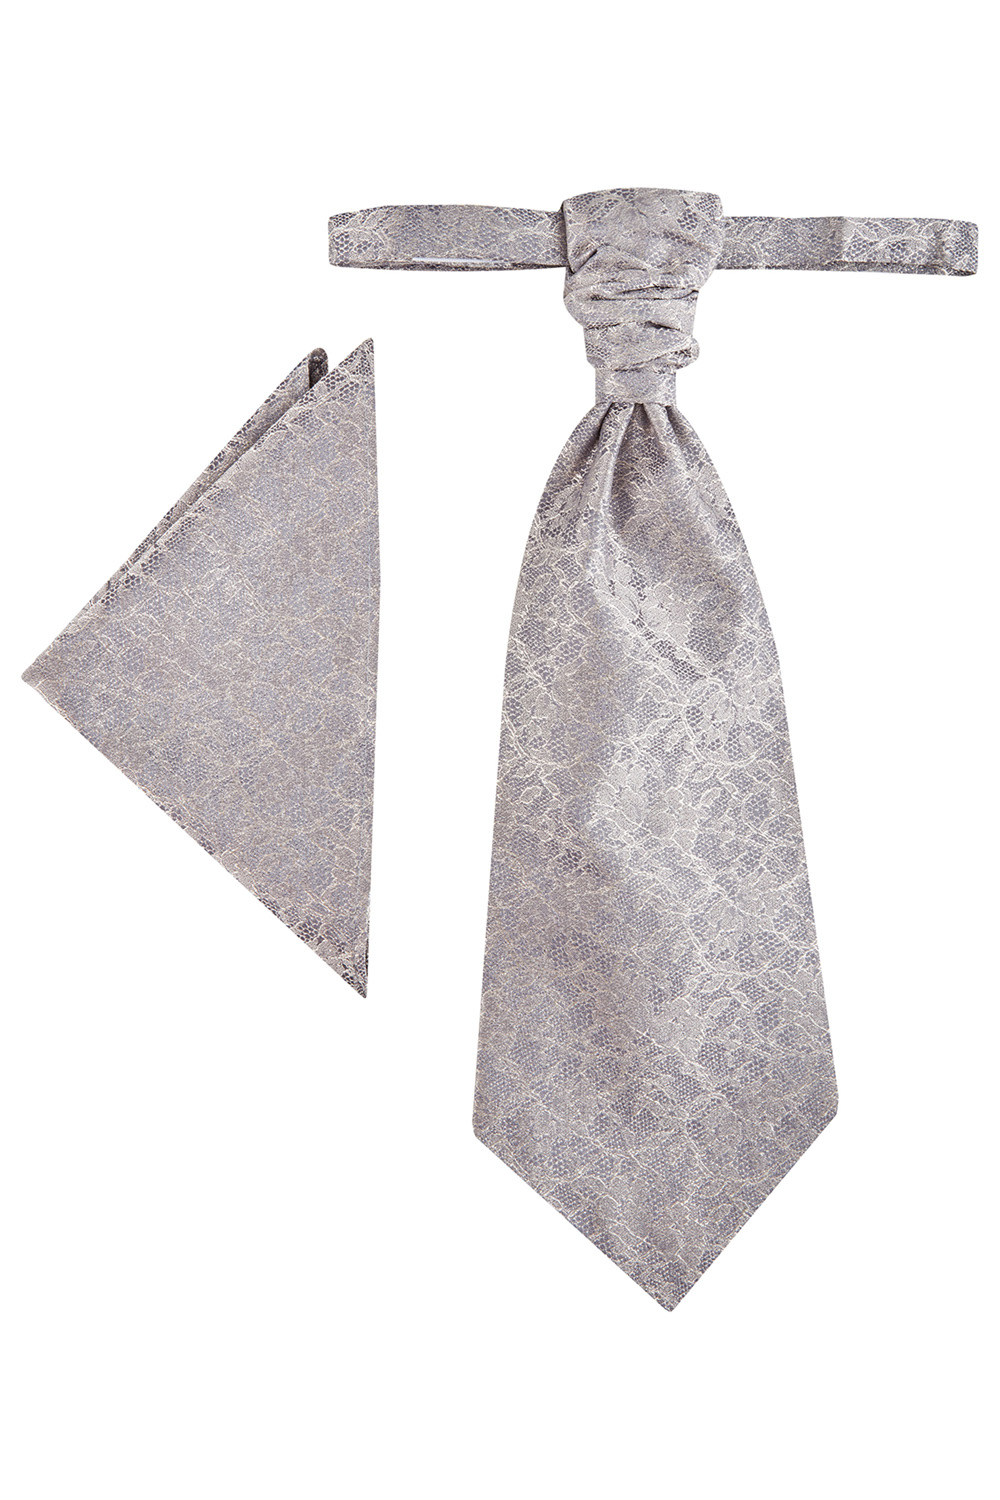 WILVORST francia nyakkendő 467103-25 Modell 0622